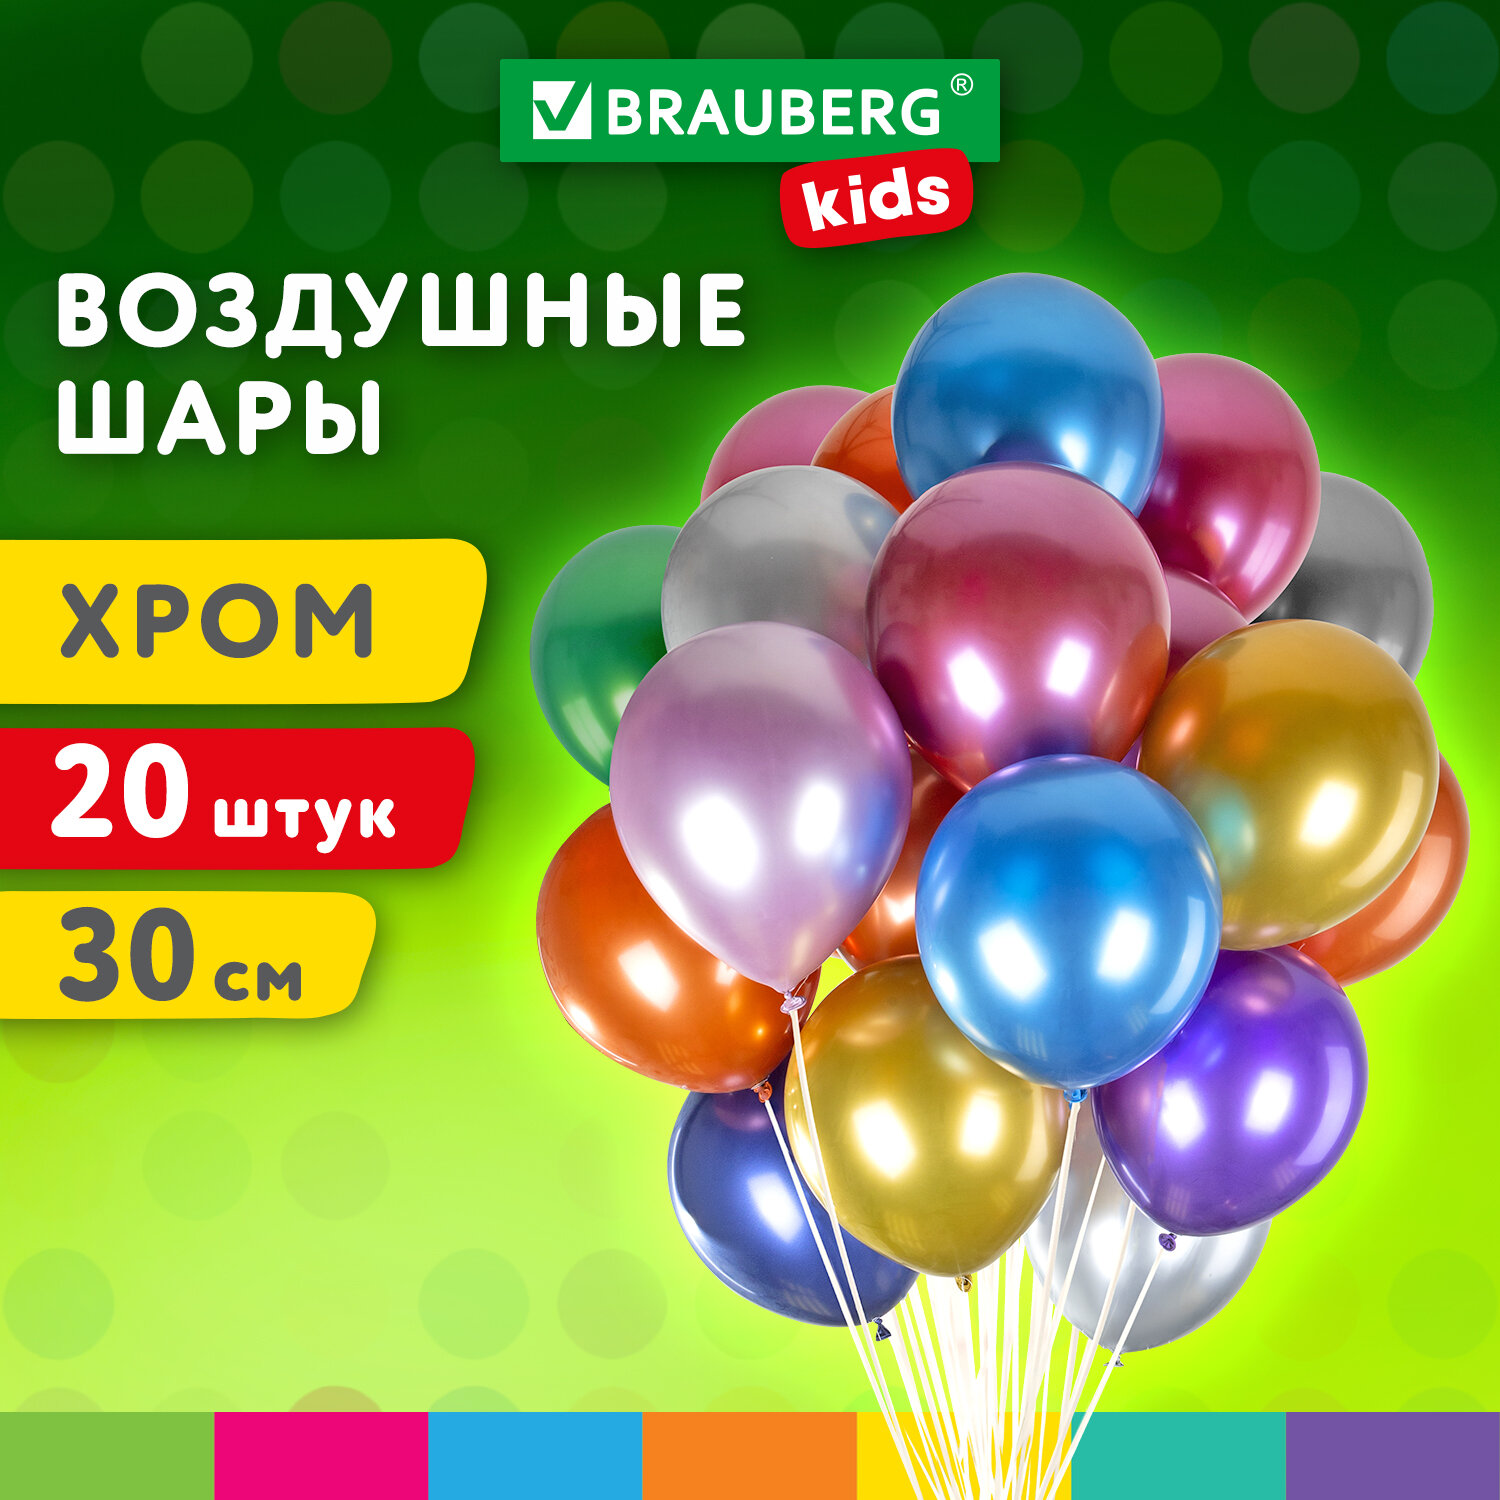 Шарики воздушные Brauberg Kids 591887 набор на день рождения, для фотозоны, 30 см, 20 штук волшебный день сказки